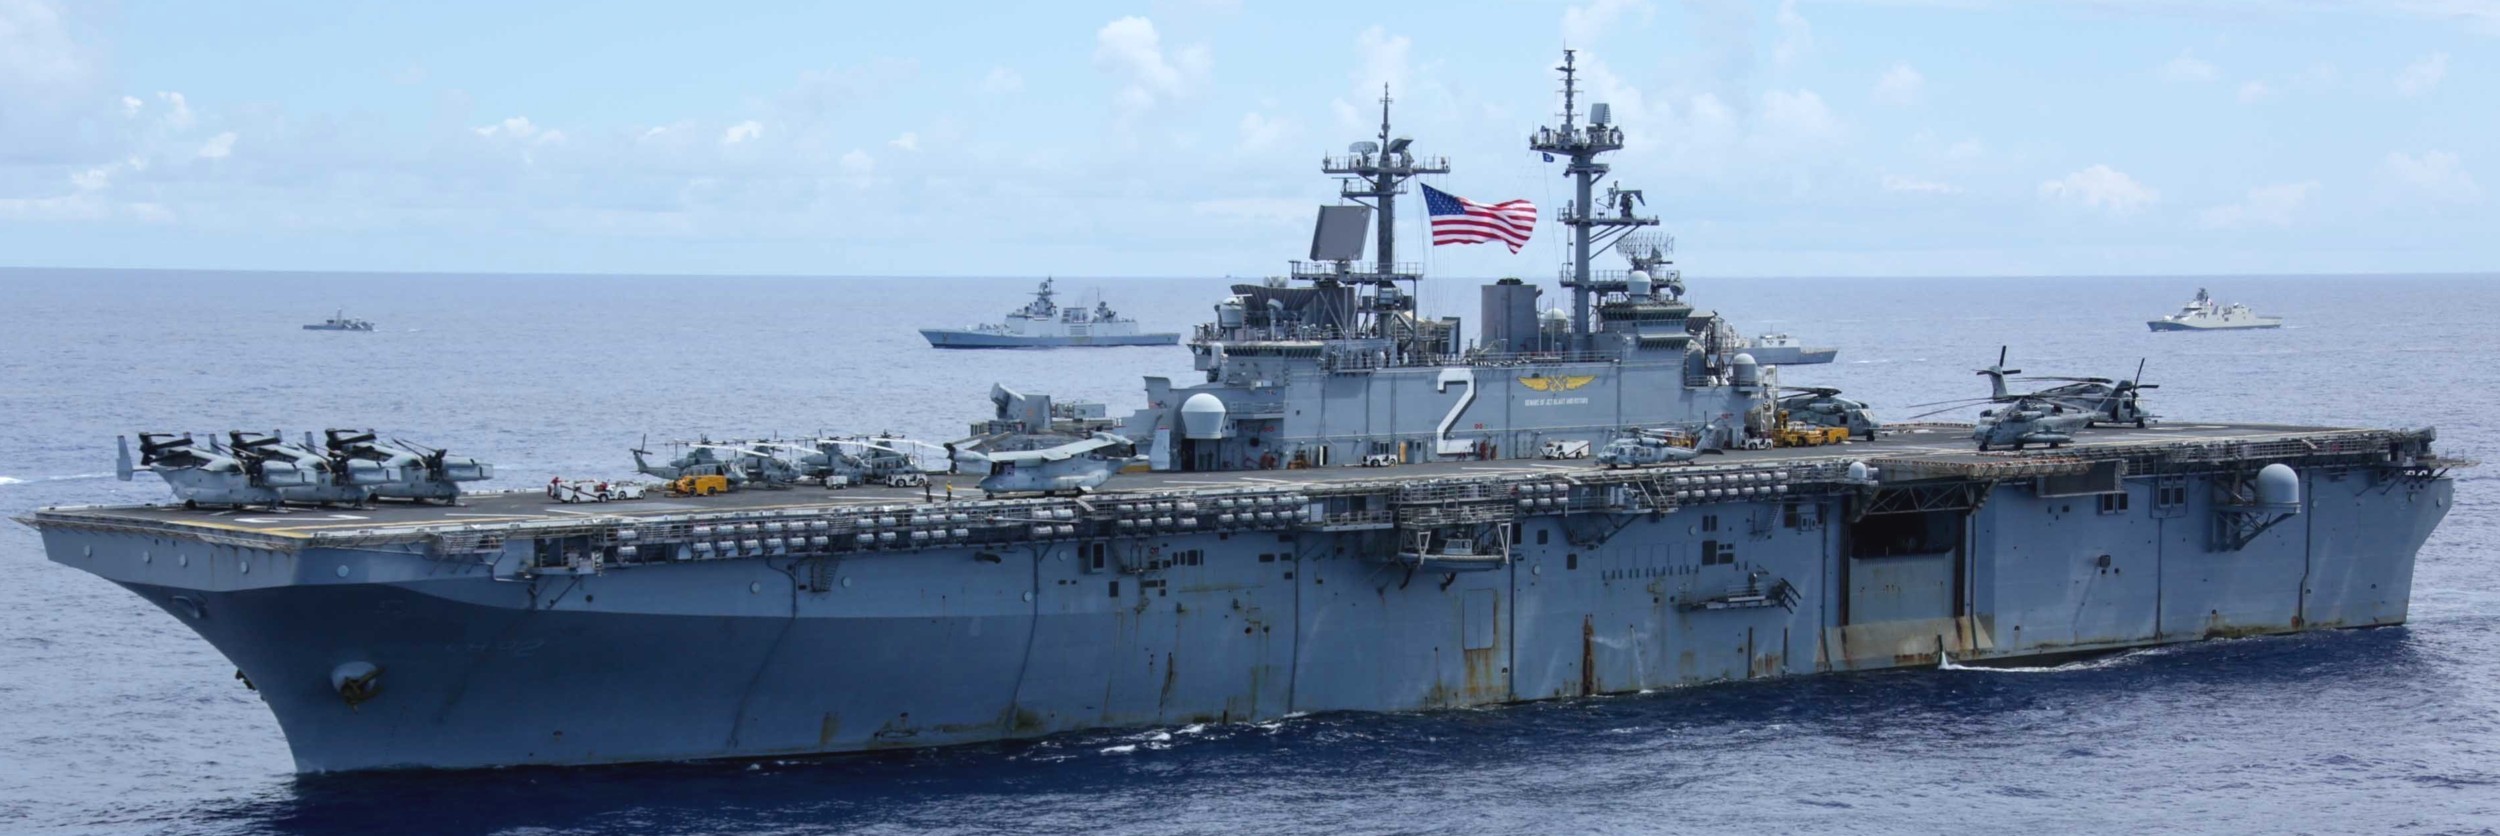 lhd-2 uss essex wasp class amphibious assault ship landing helicopter us navy marines vmm-363 rimpac 239